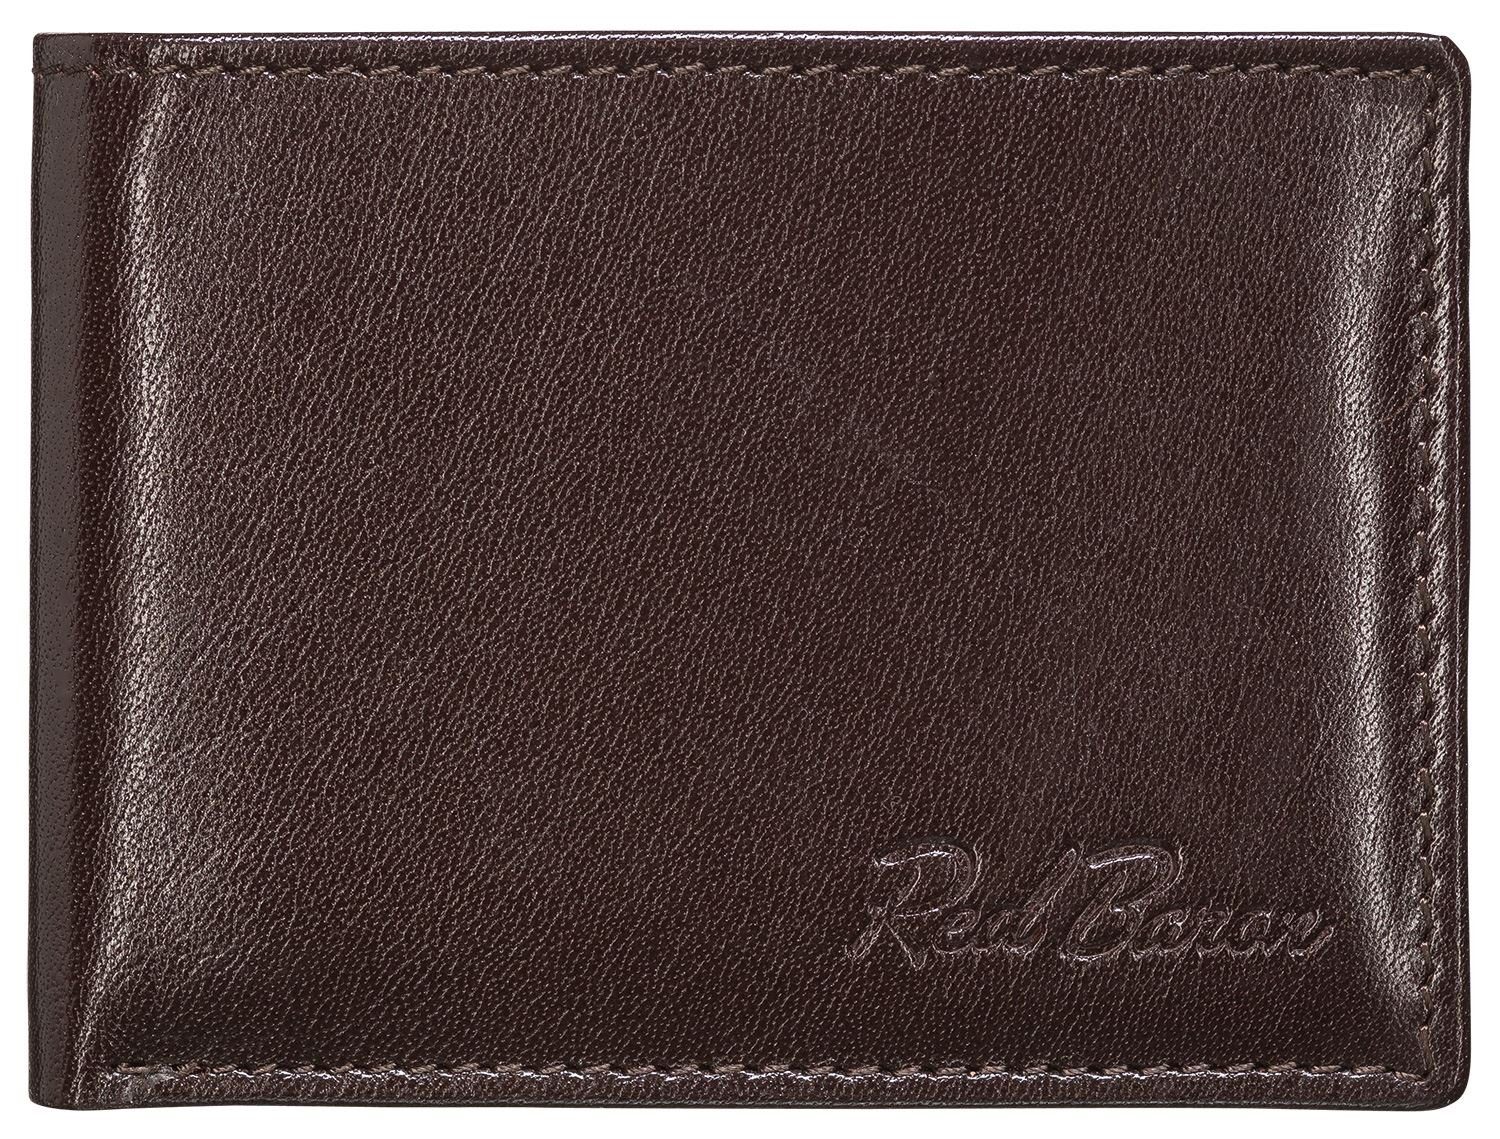 Münzfach Druckknopf Red Baron mit 1-fach Geldbörse Kreditkartenfächer, RB-WT-001-04, klappbar,